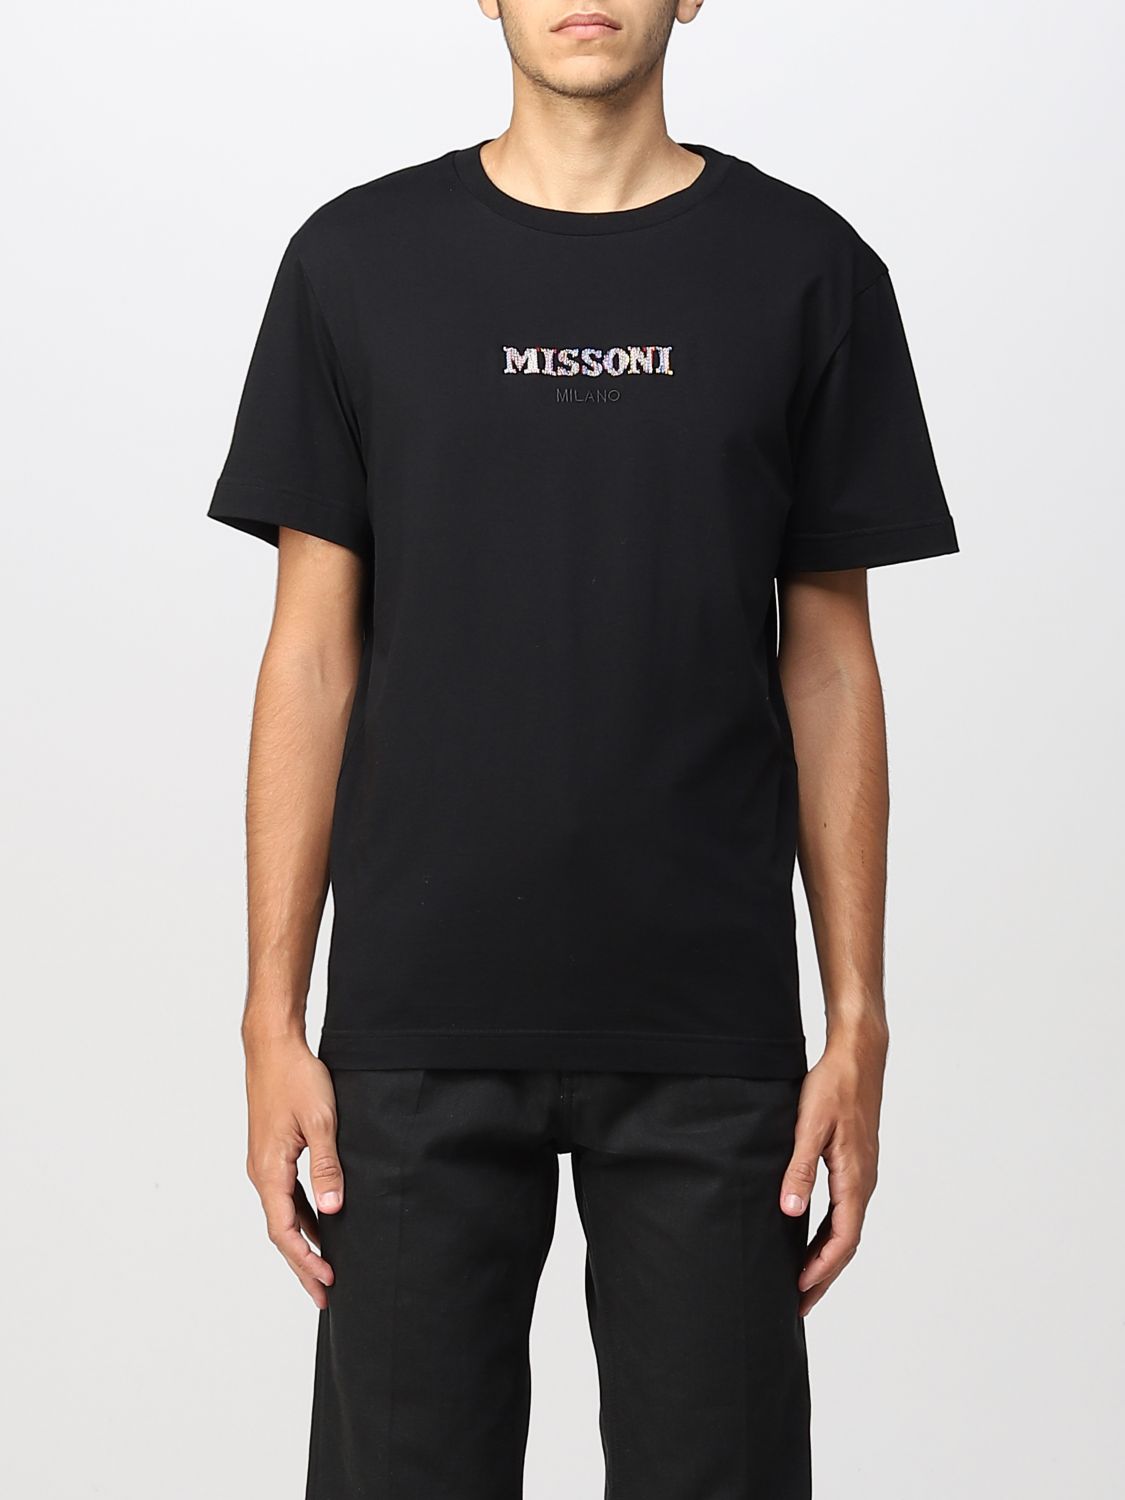 T-shirt Missoni: Missoni t-shirt for men black 1